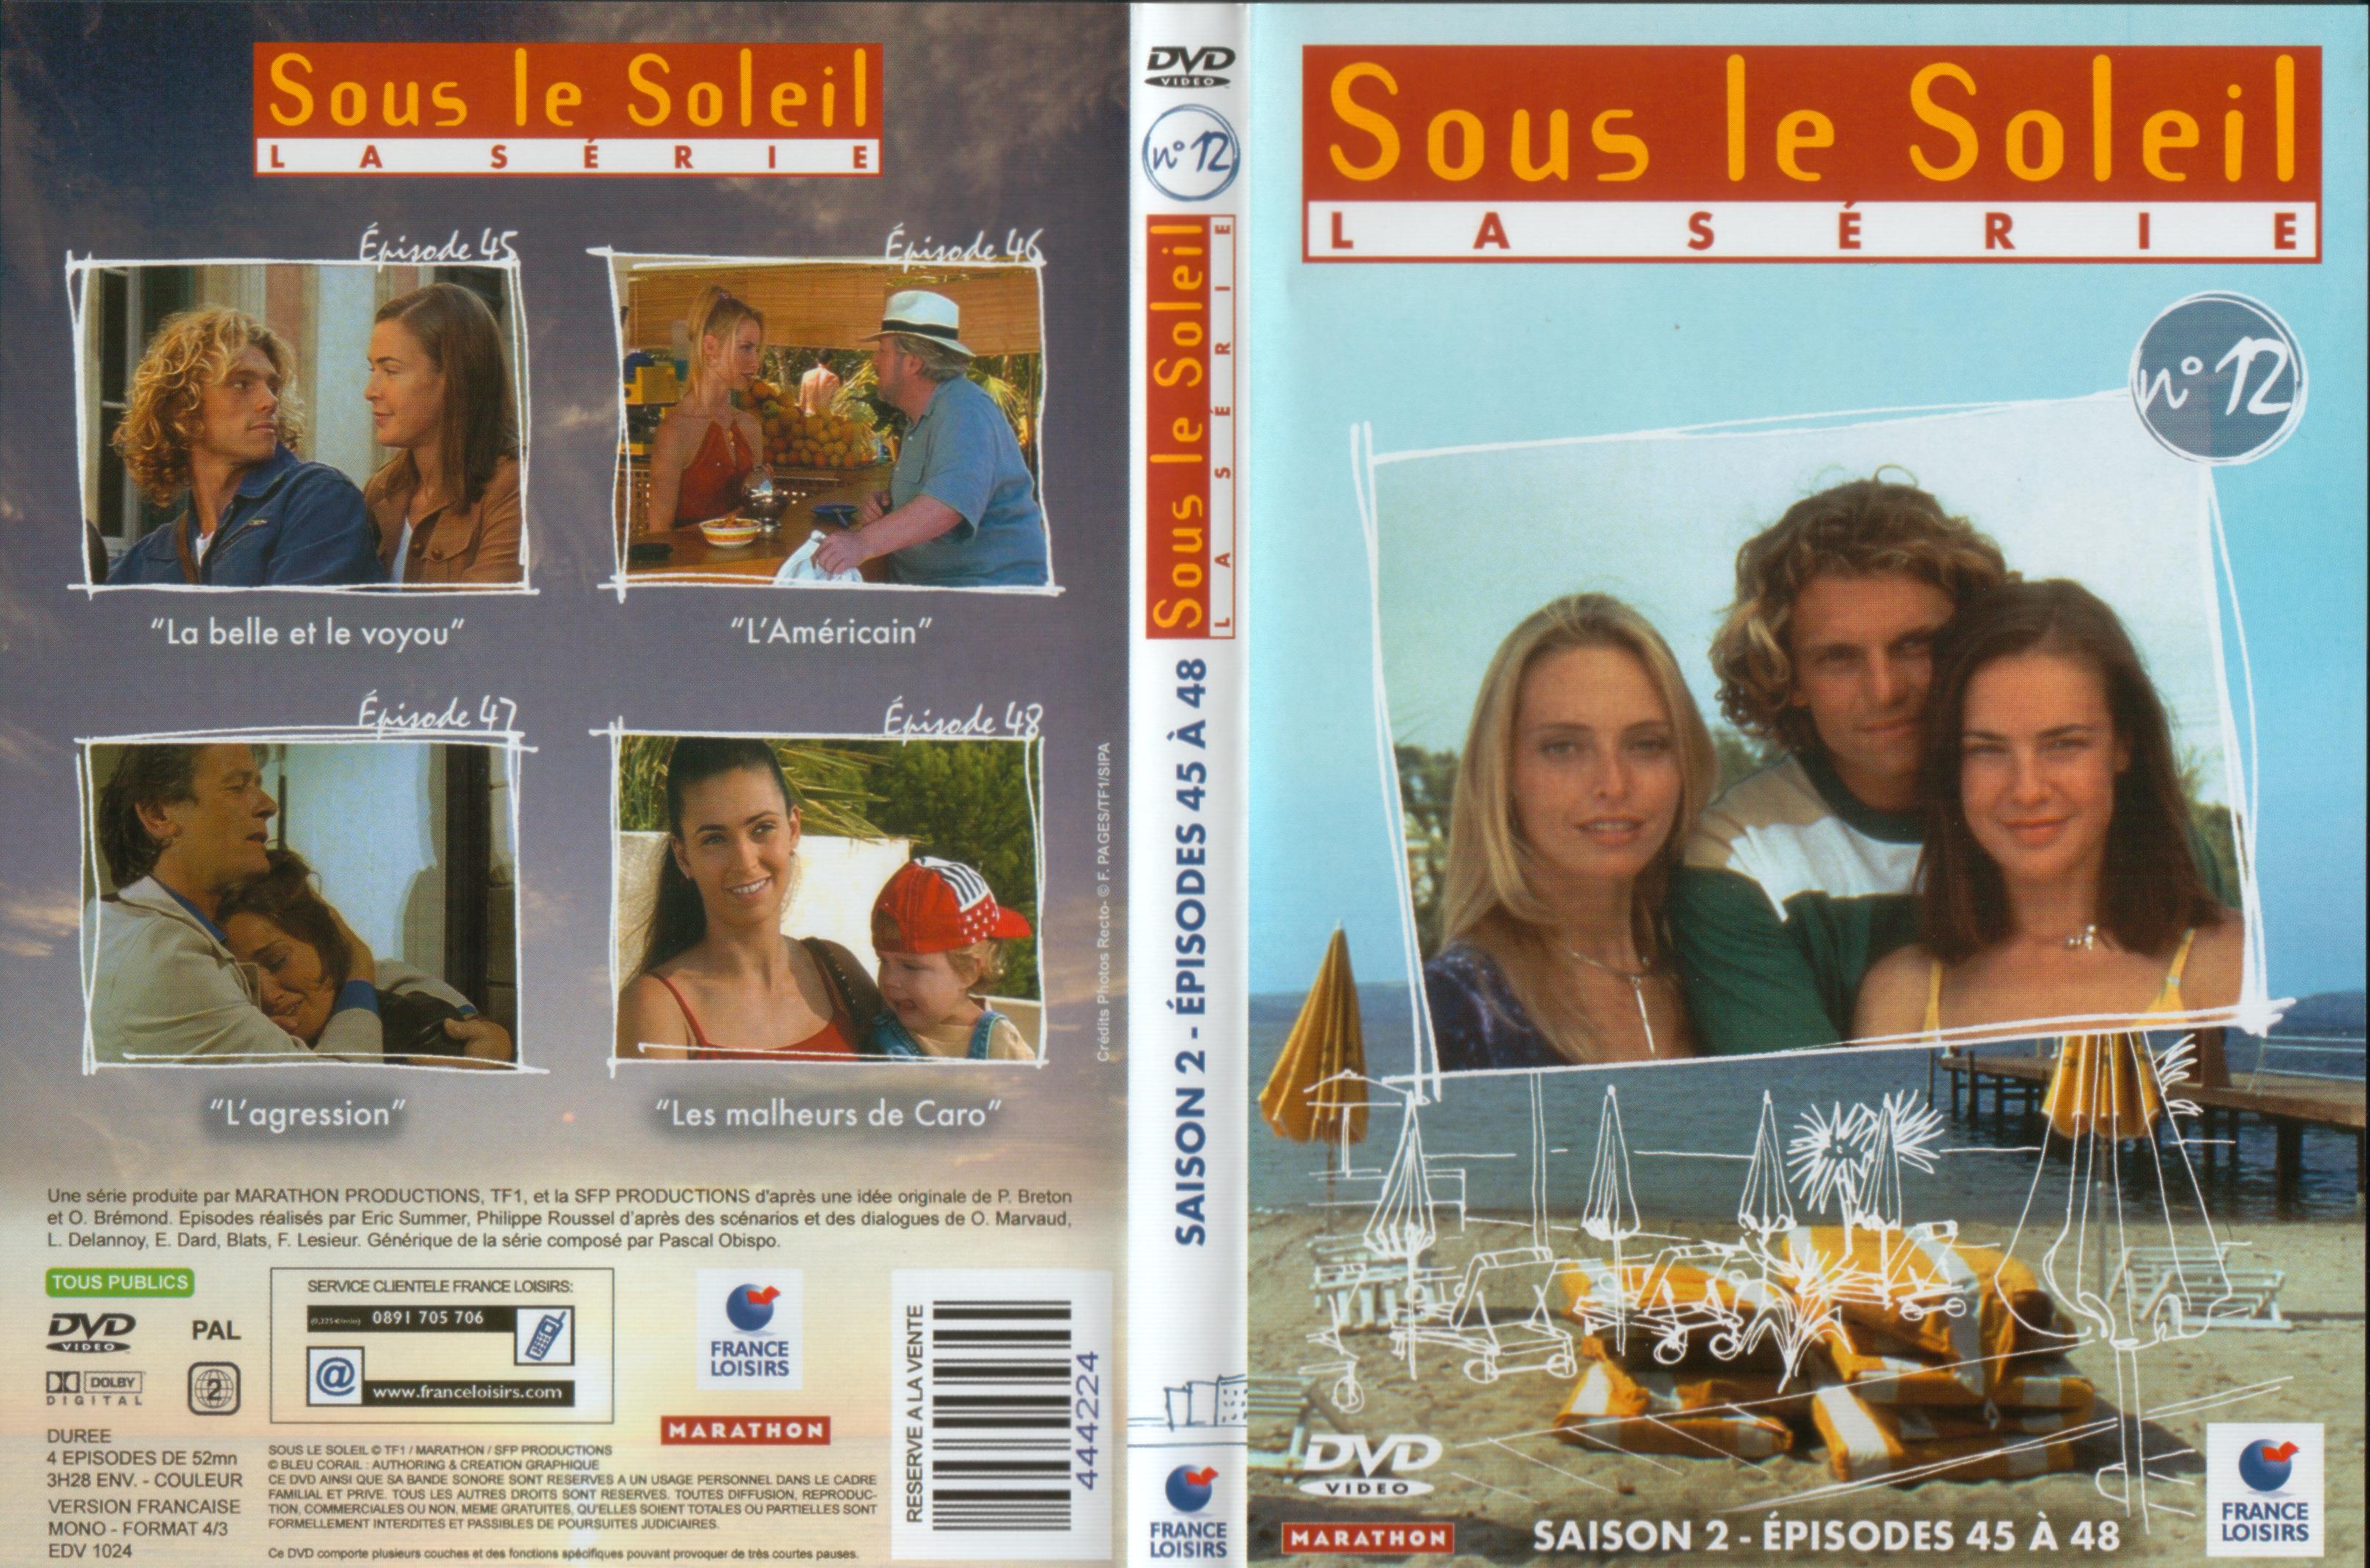 Jaquette DVD Sous le soleil saison 2 vol 12